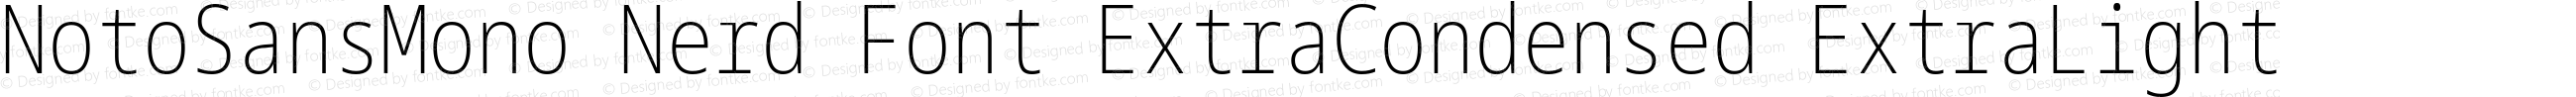 Noto Sans Mono ExtraCondensed ExtraLight Nerd Font Complete